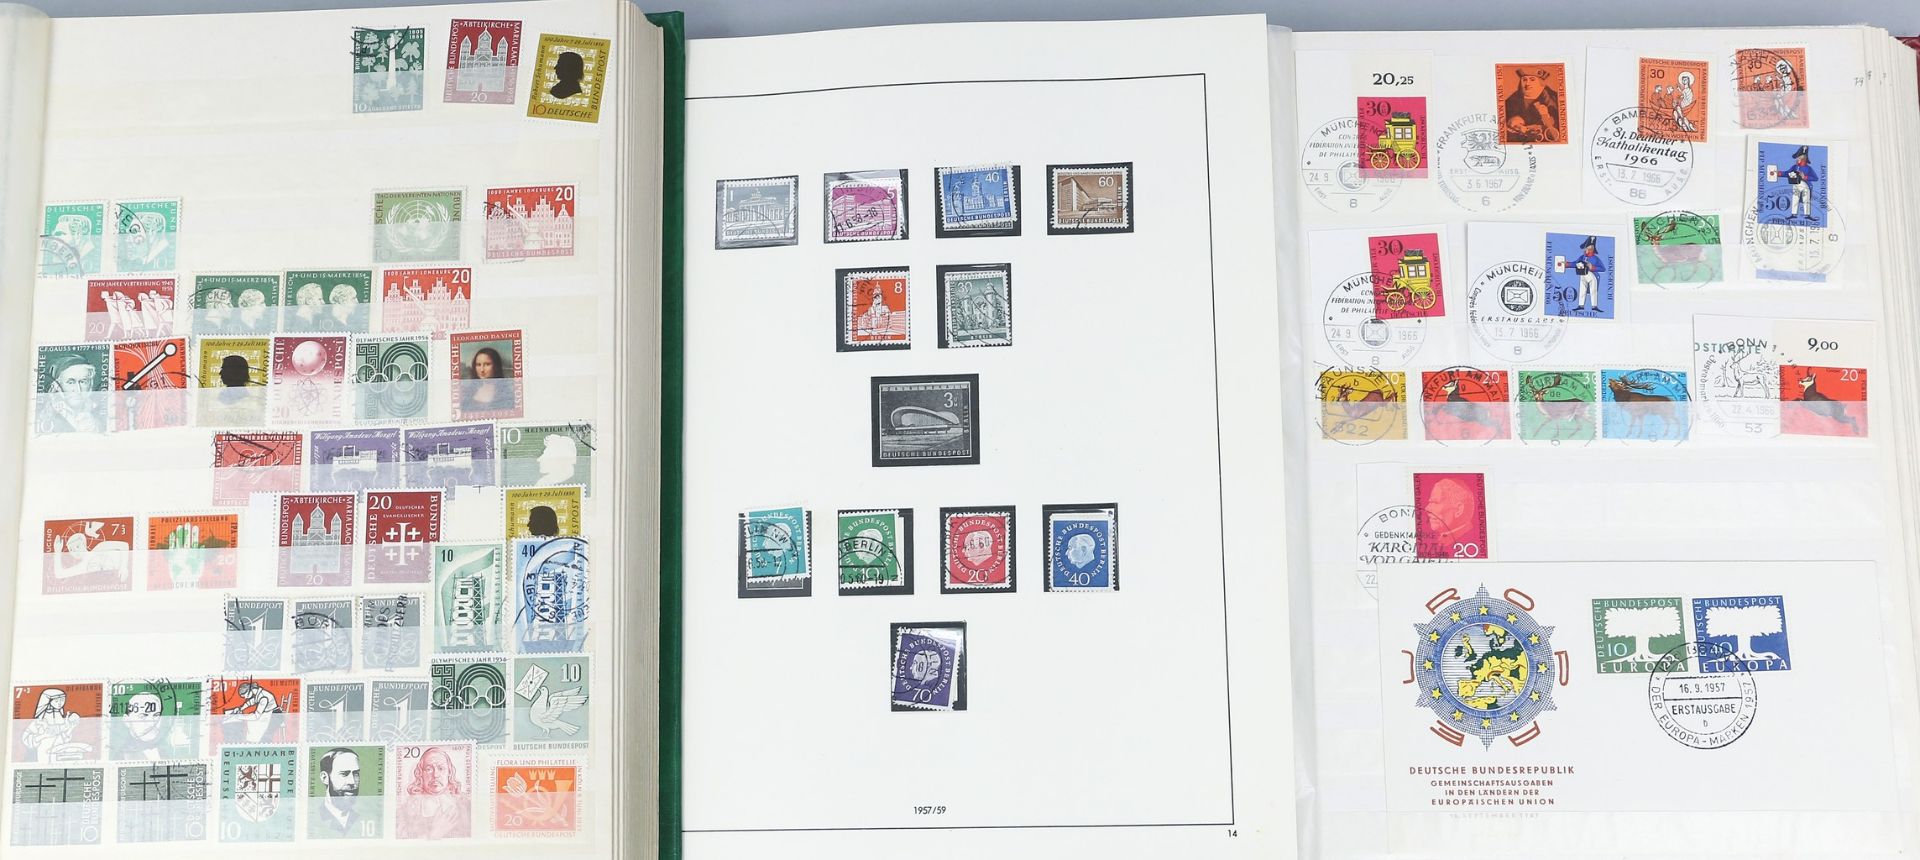 Großer Posten Briefmarken.